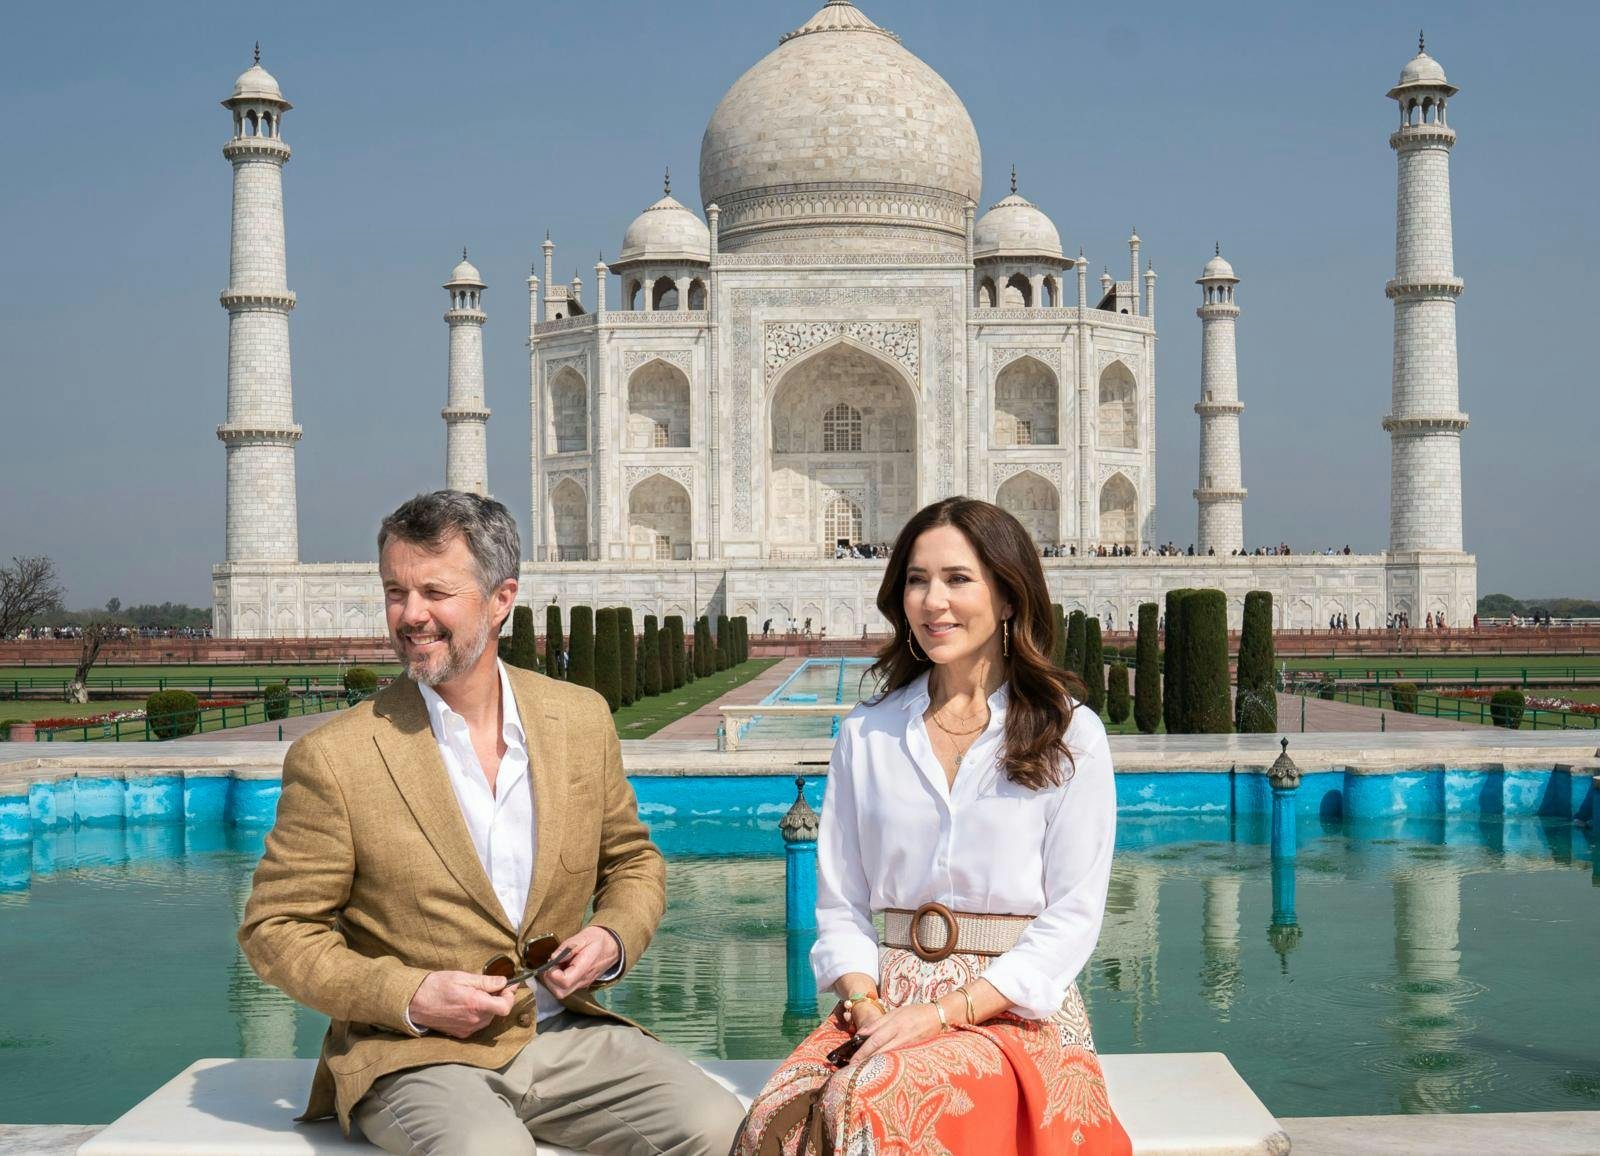 Kronprins Frederik og kronprinsse Mary blev selvfølgelig også foreviget foran ikoniske Taj Mahal.